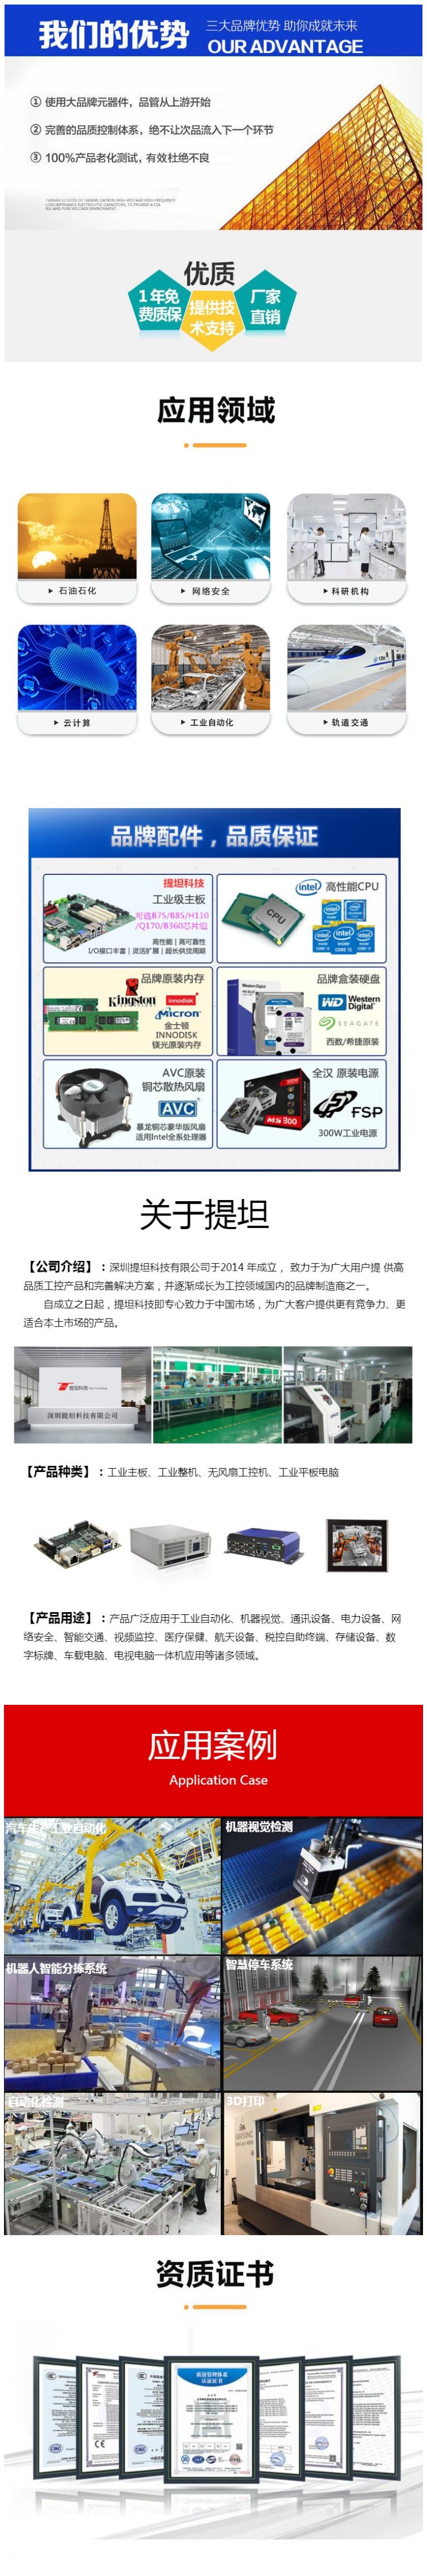 H110工业主板 深圳工业主板 工控主板 ATX主板 提坦